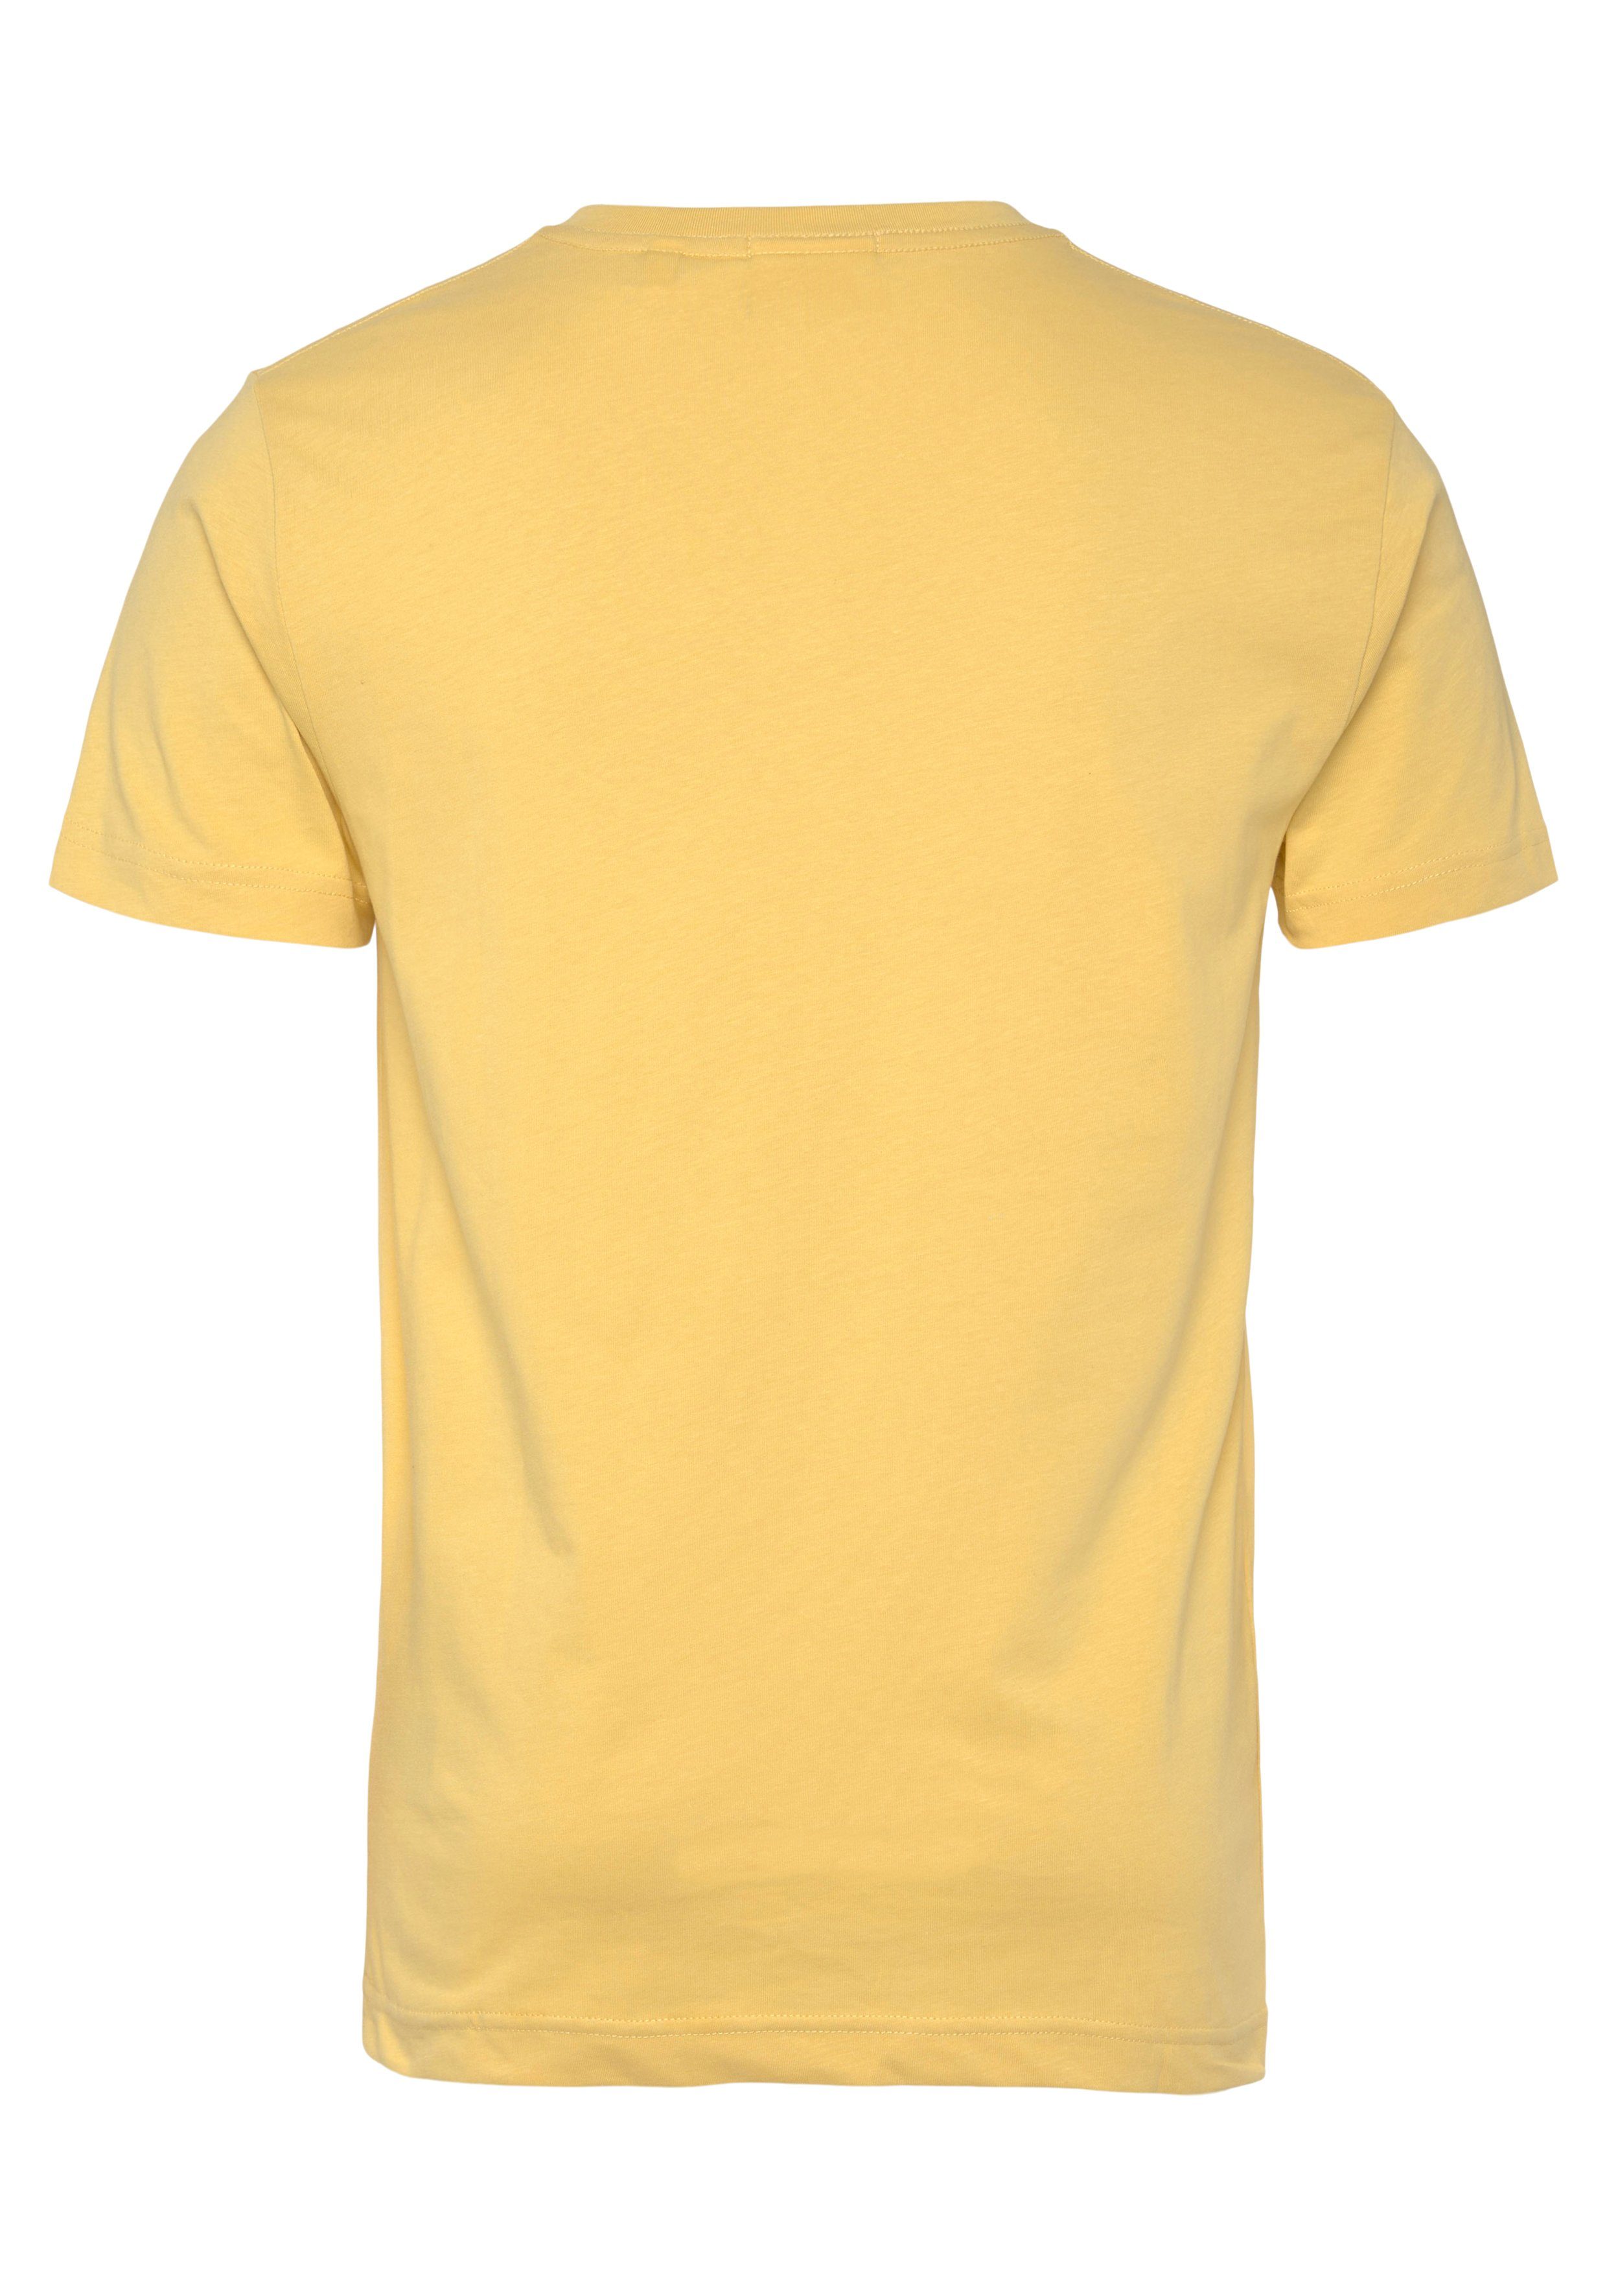 einer Gant Brust T-Shirt PARCHMENT Logostickerei auf SHIELD V-NECK YELLOW T-SHIRT mit kleinen SLIM der